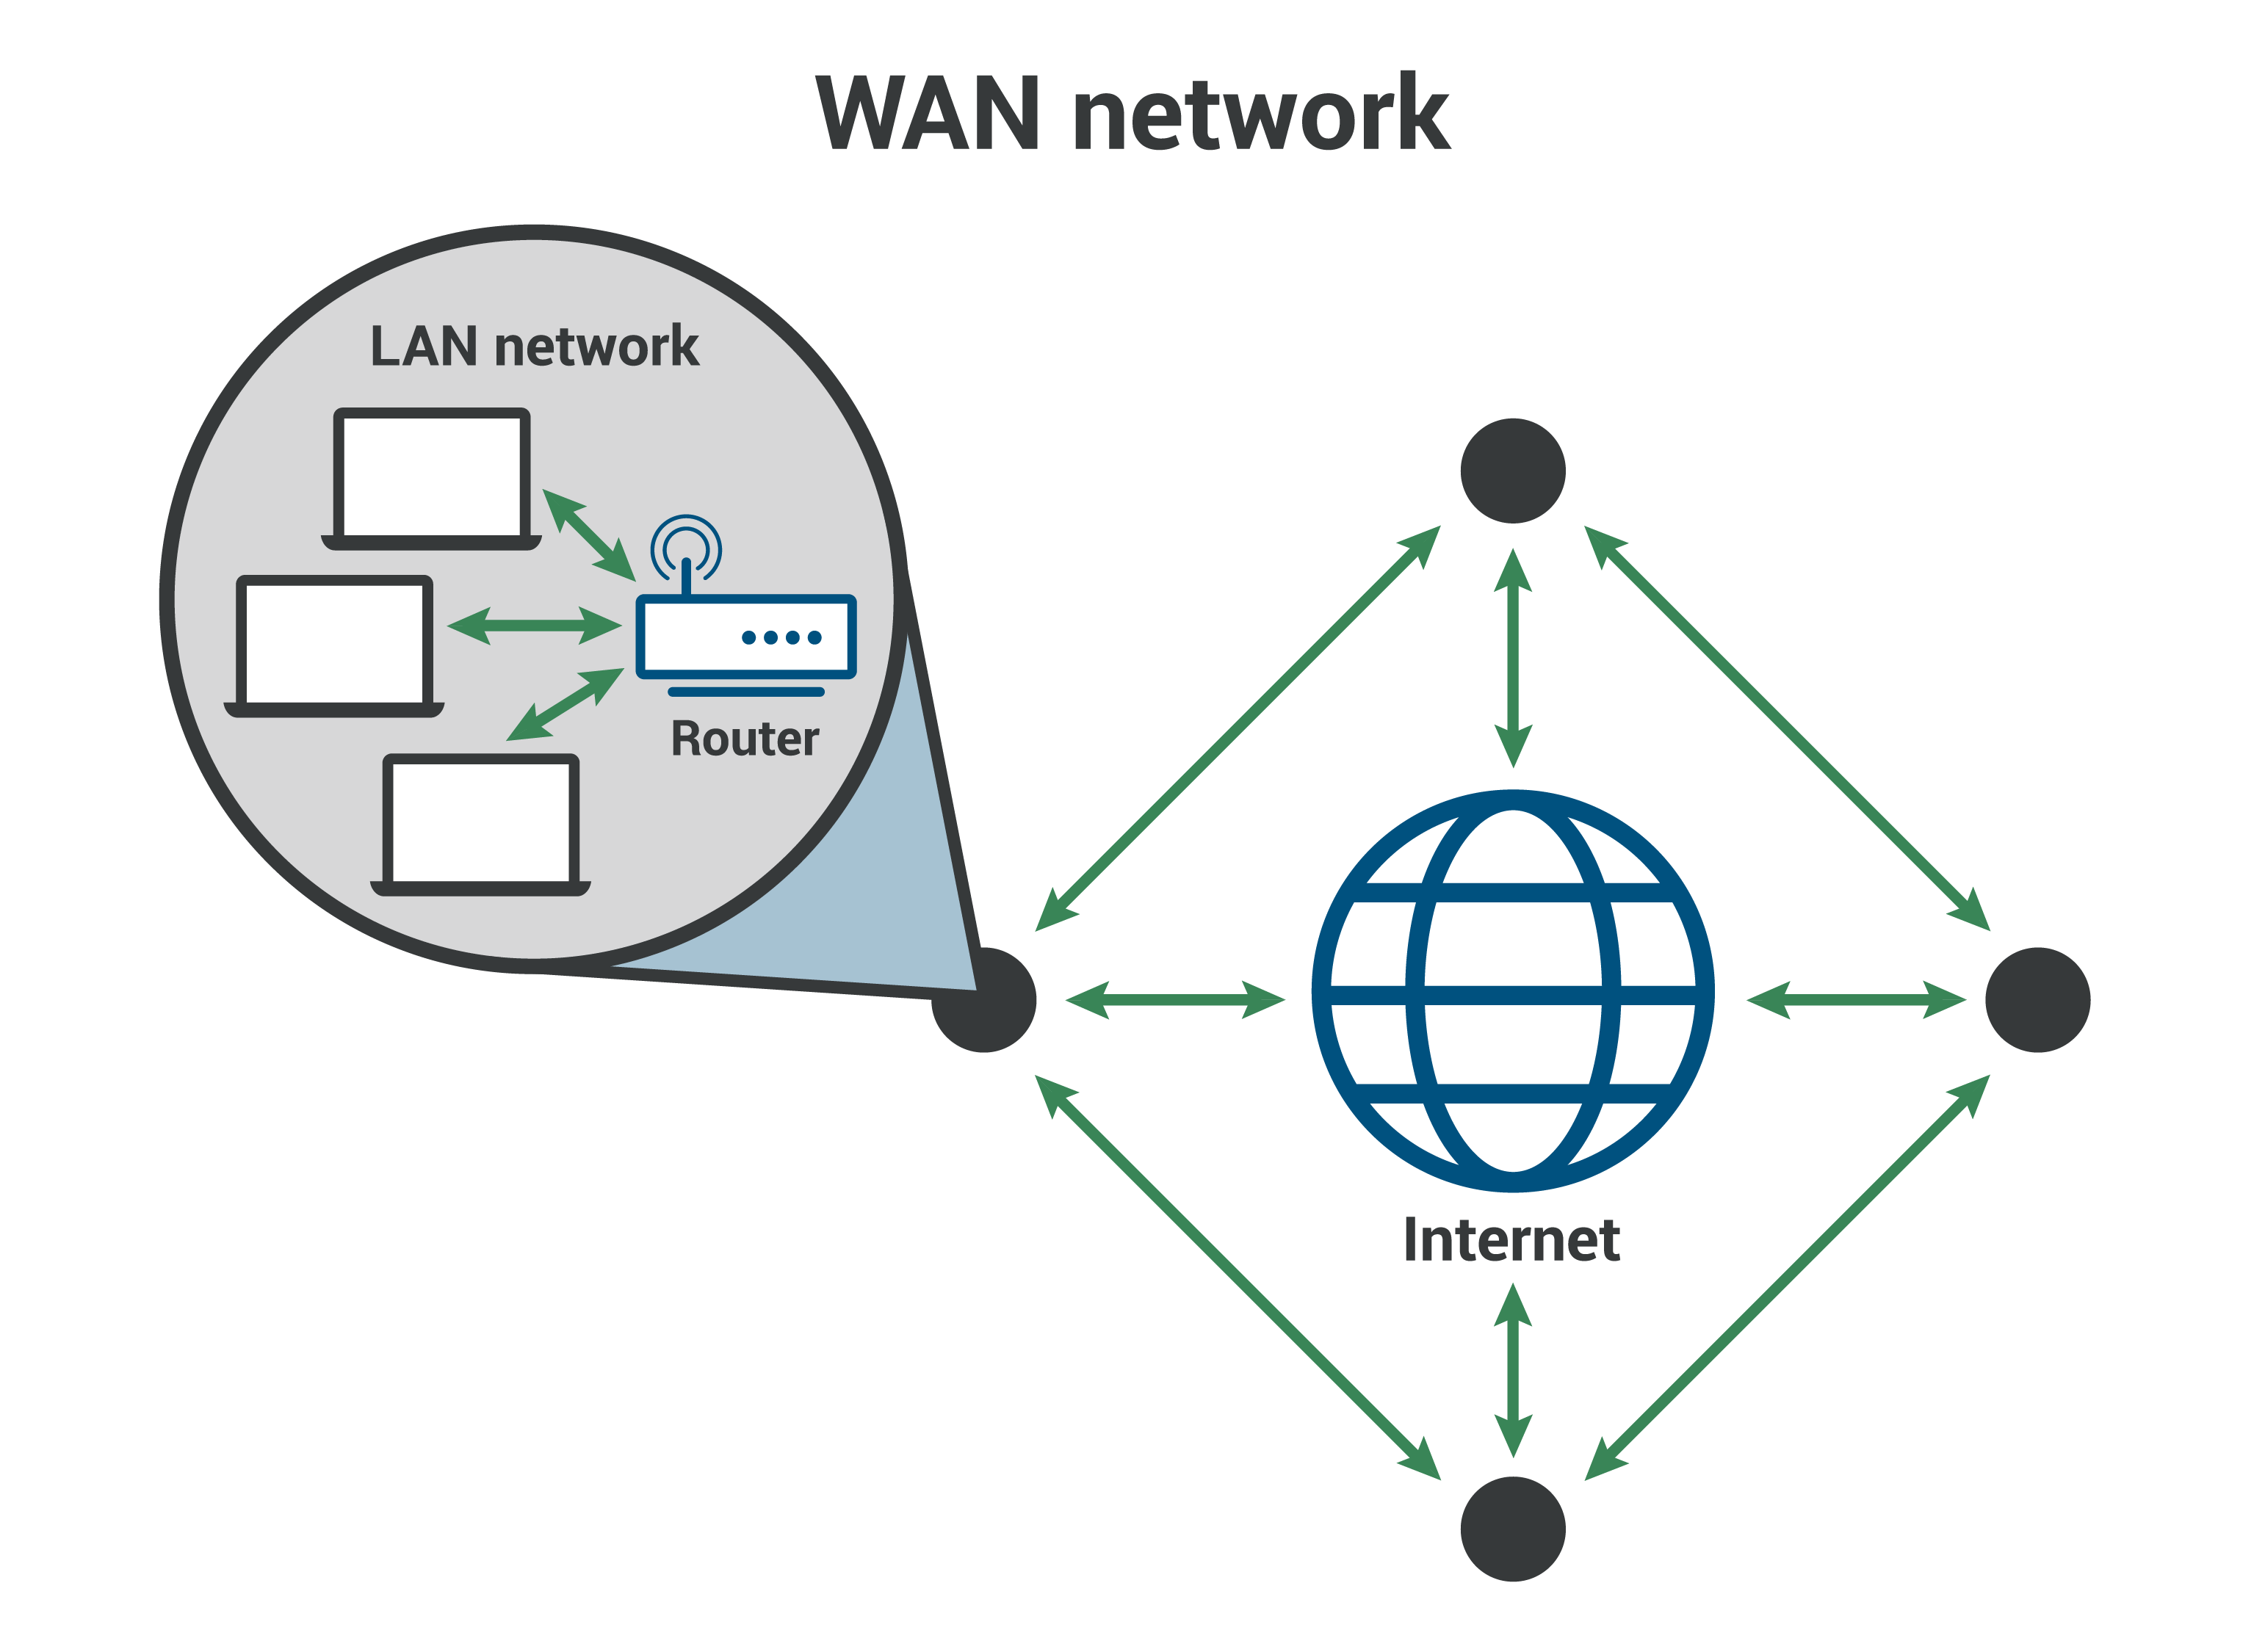 广域网 WAN——连接多个局域网